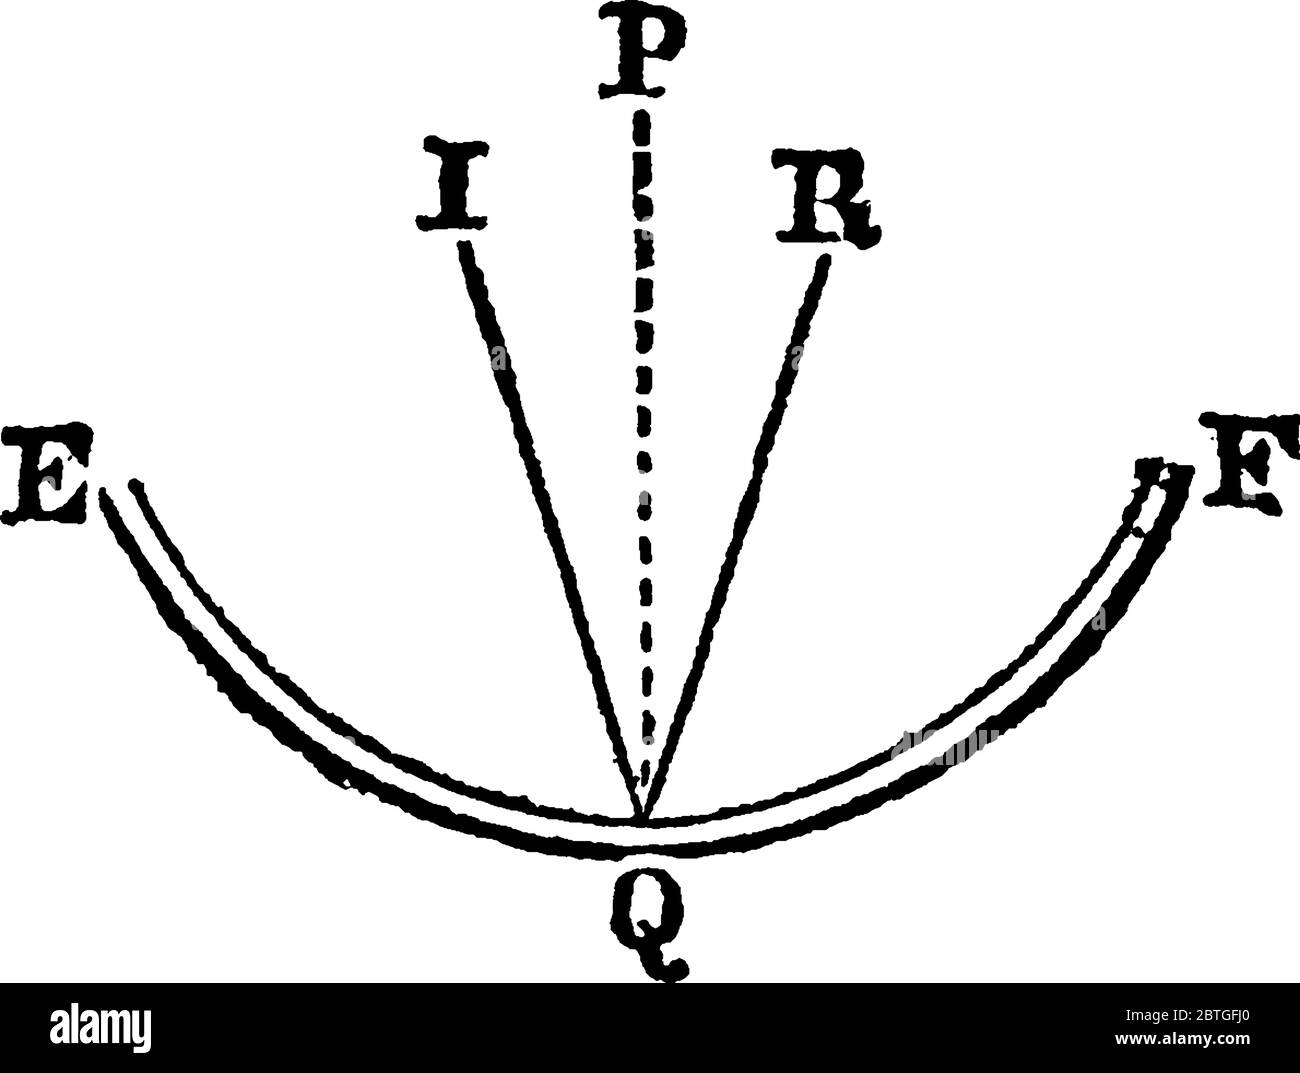 Le rayon incident (I) frappant une surface réfléchissante concave au point Q et l'angle de réflexion (R) est égal à l'angle d'incidence, comme illustré, la ligne vintage dra Illustration de Vecteur